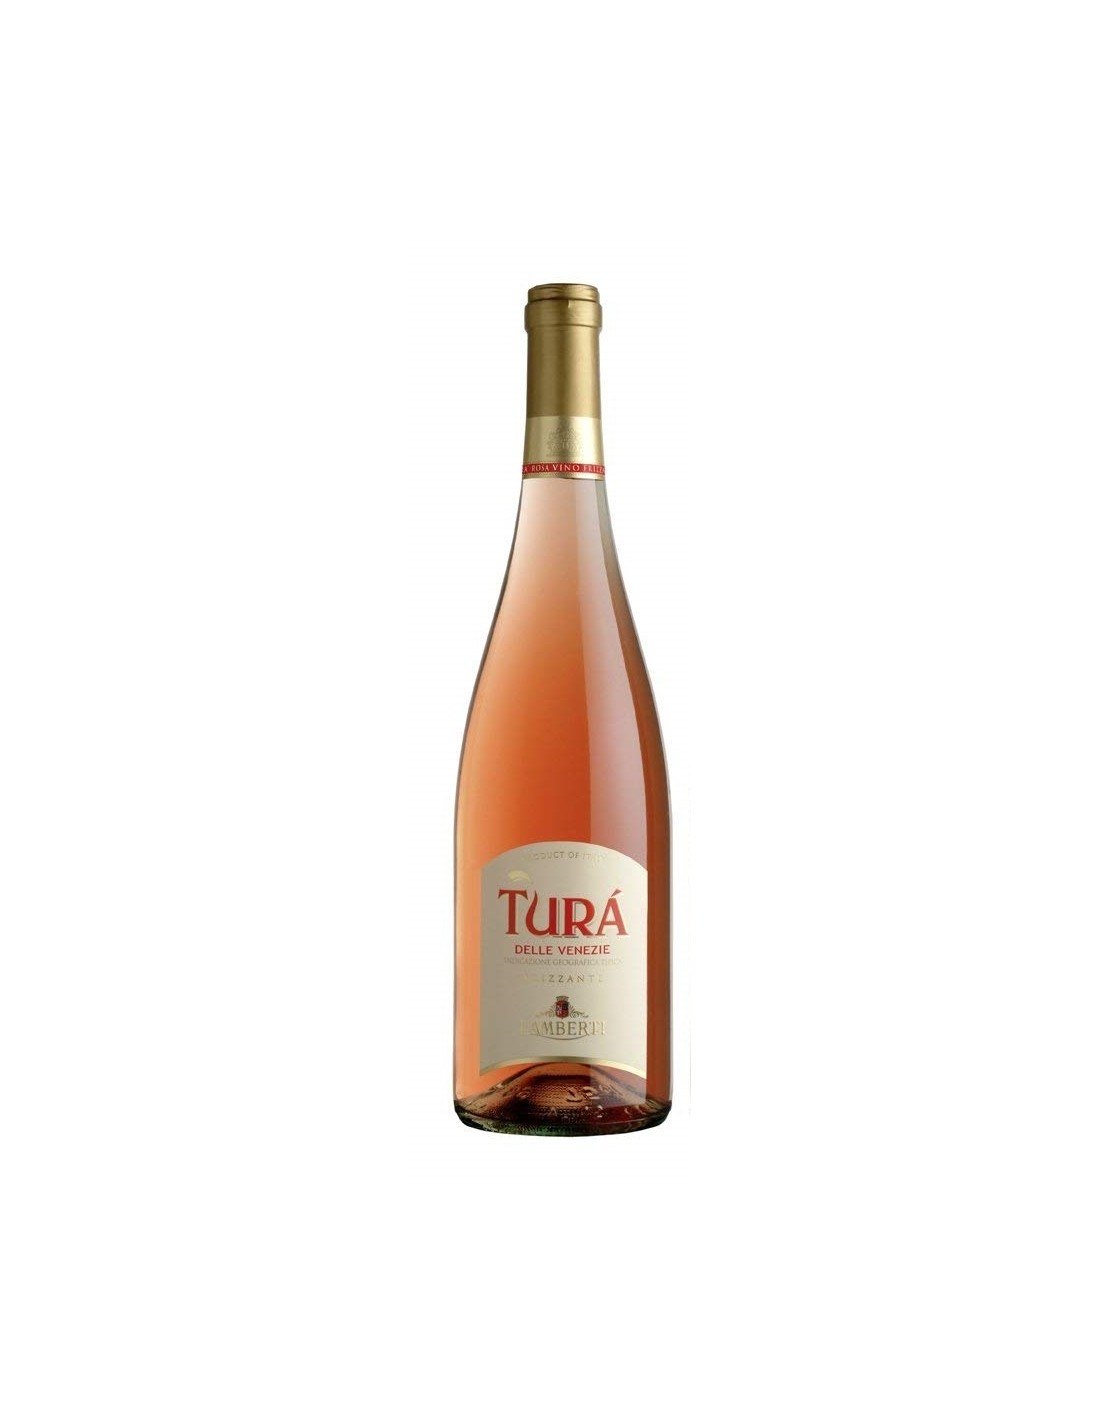 Vin frizzante roze, Lamberti Tura Delle Venezie, 0.75L, 11.5% alc., Italia alcooldiscount.ro